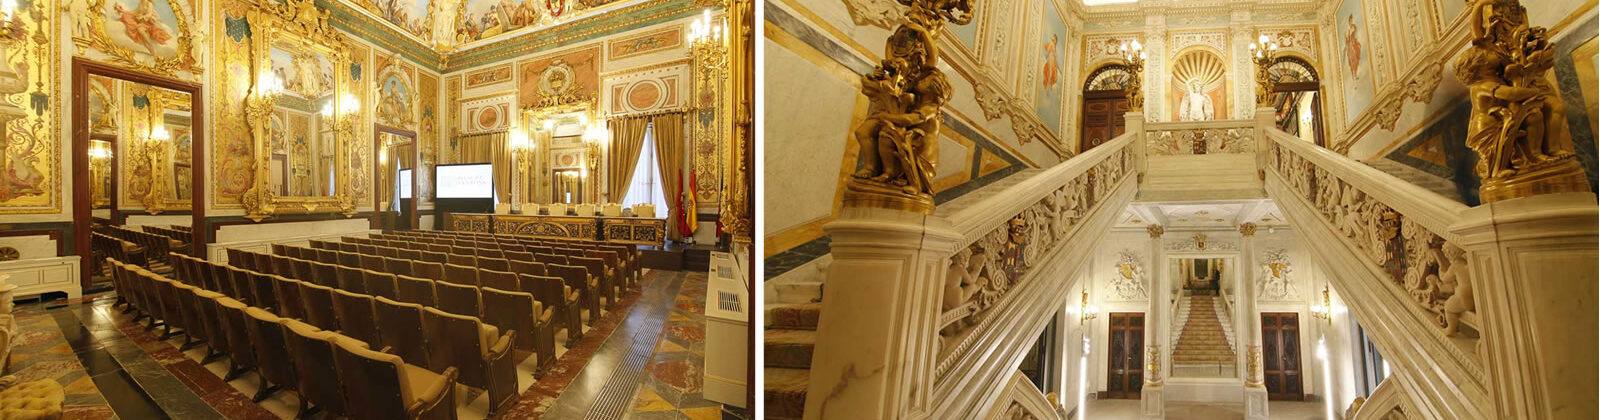 Vistas del interior del Palacio de Santoña, escalera princial y sala de actos.